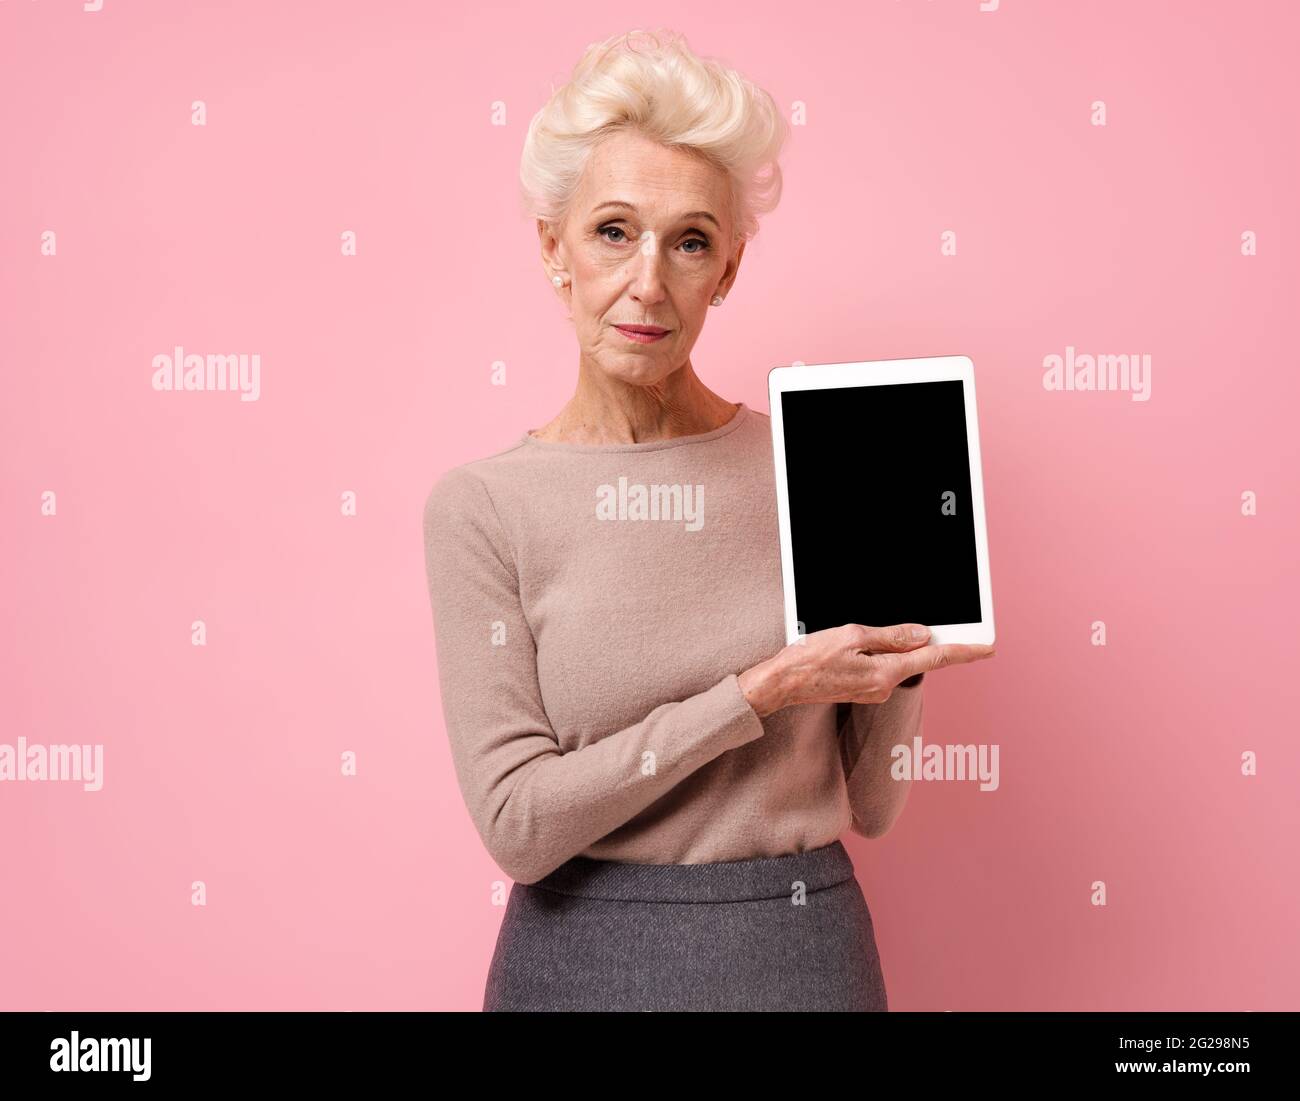 Femme souriante tenant une tablette numérique avec un écran vierge. Photo d'une femme âgée sur fond rose. Banque D'Images